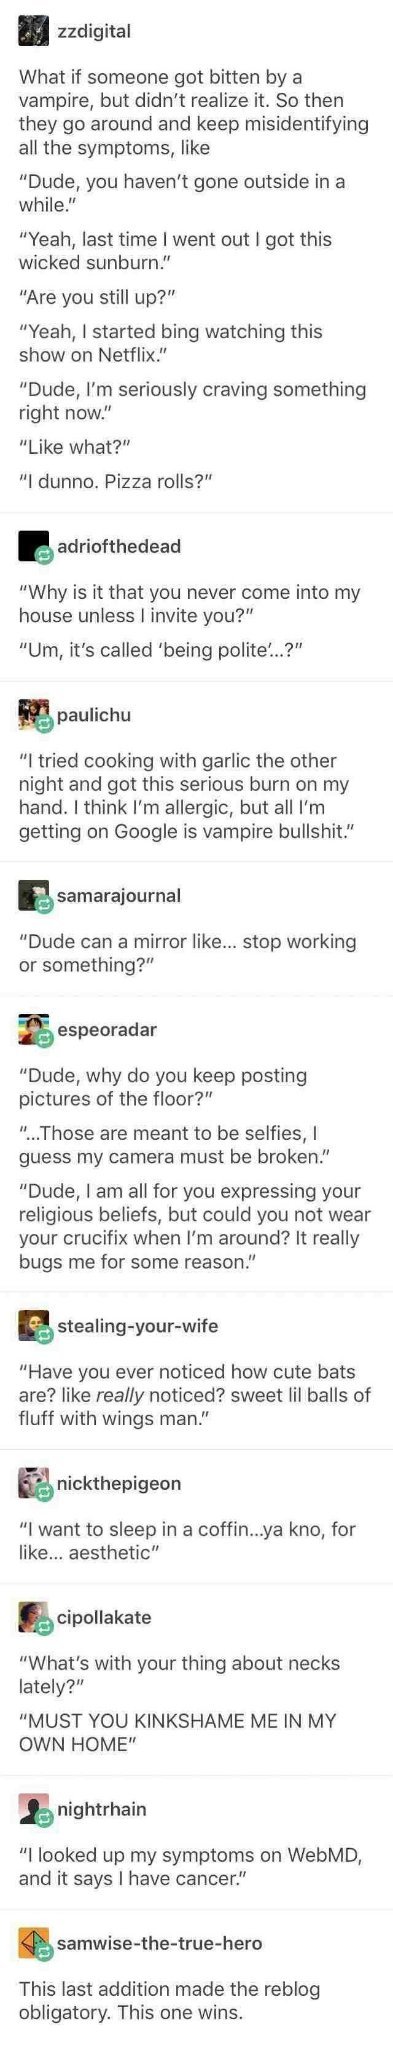 Vampire - meme